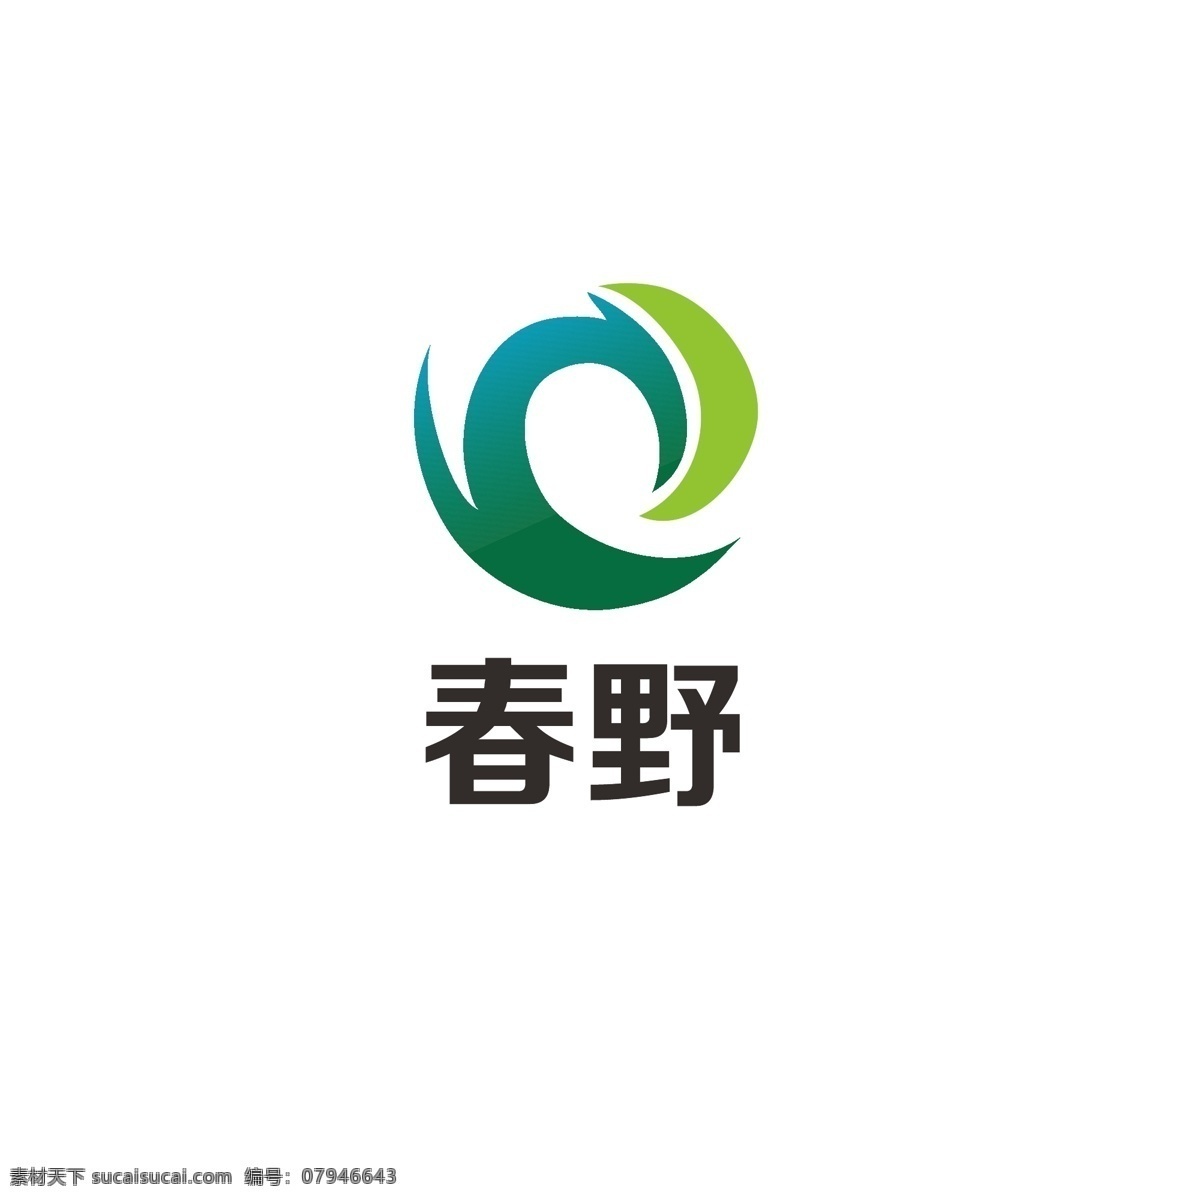 农业 产品 logo 简约 绿色 发展 科技 字母c 字母y